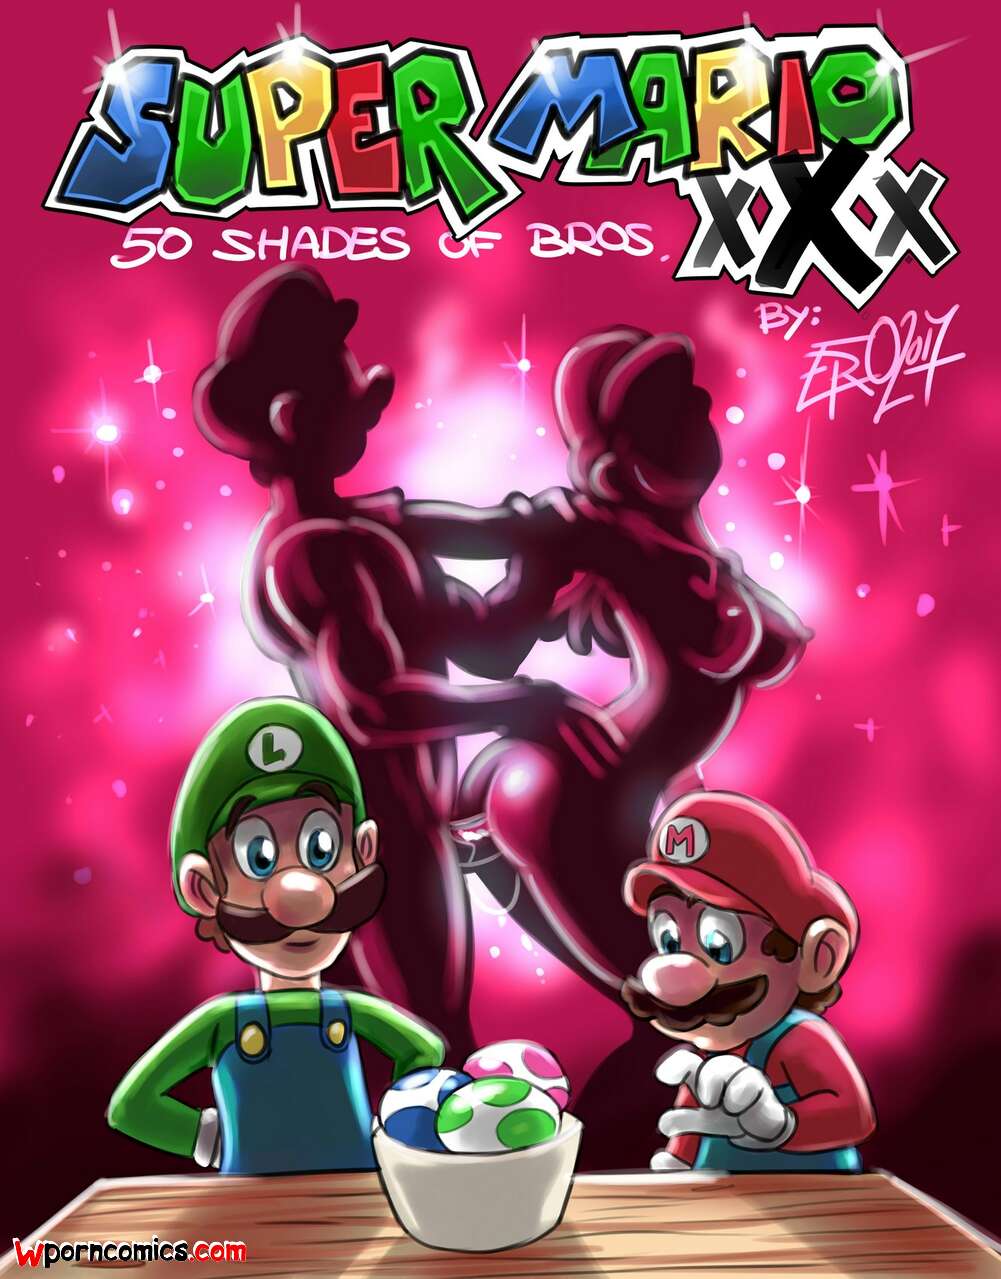 âœ…ï¸ Porn comic Super Mario xXx. 50 Shades of Bros. Psicoero. Sex comic of  the brothers | Porn comics in English for adults only | sexkomix2.com